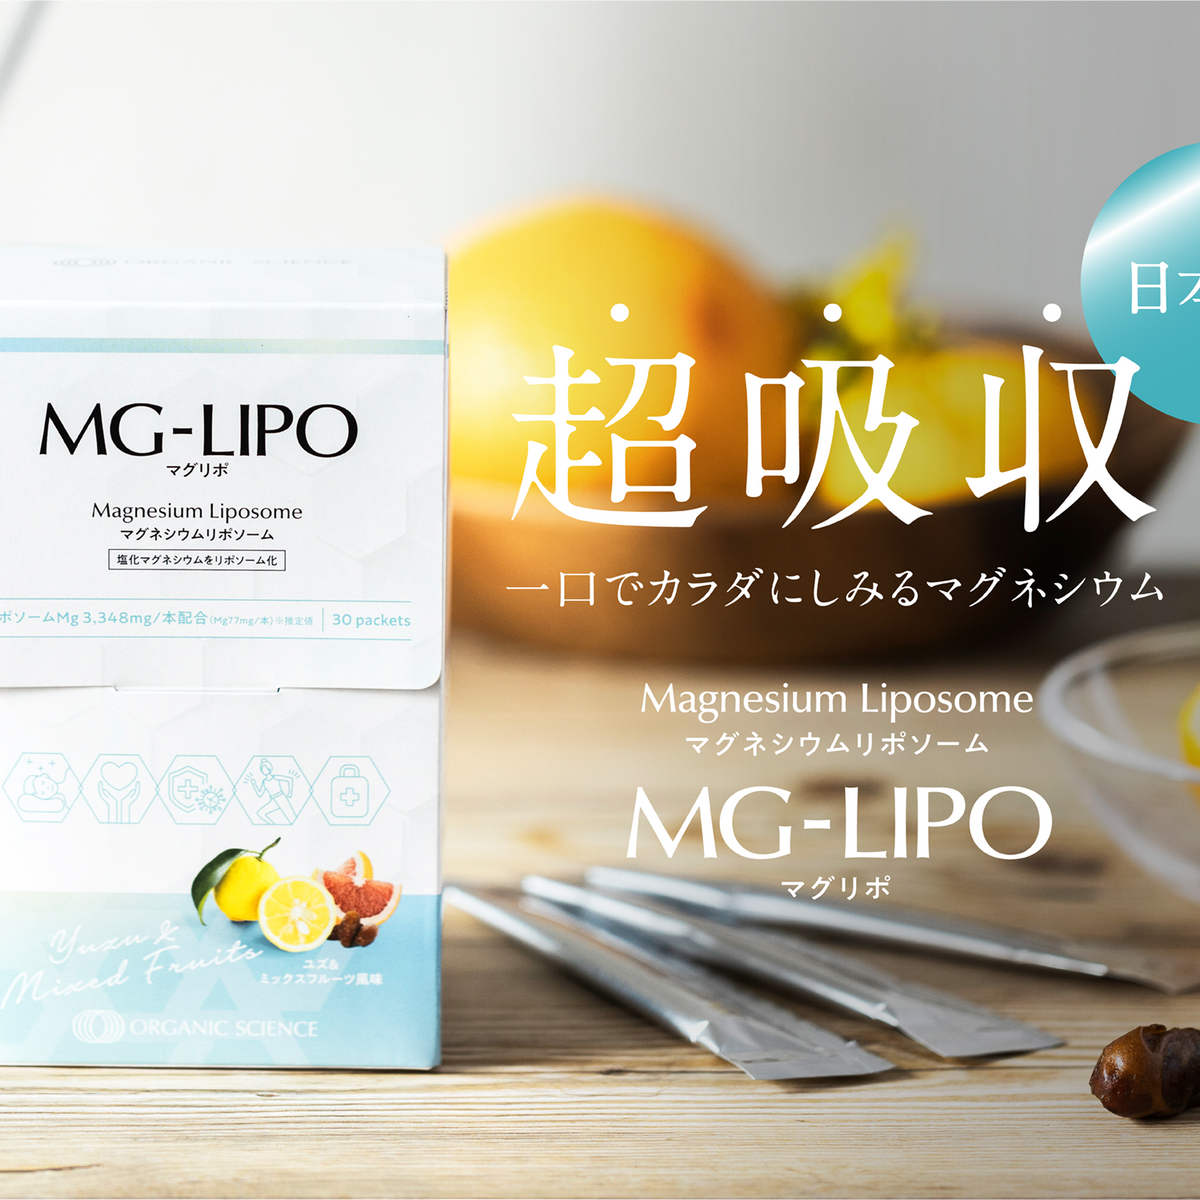 ★二箱】マグリポ Mag-Lipo 1箱 (30包)  【複数割有り】202511